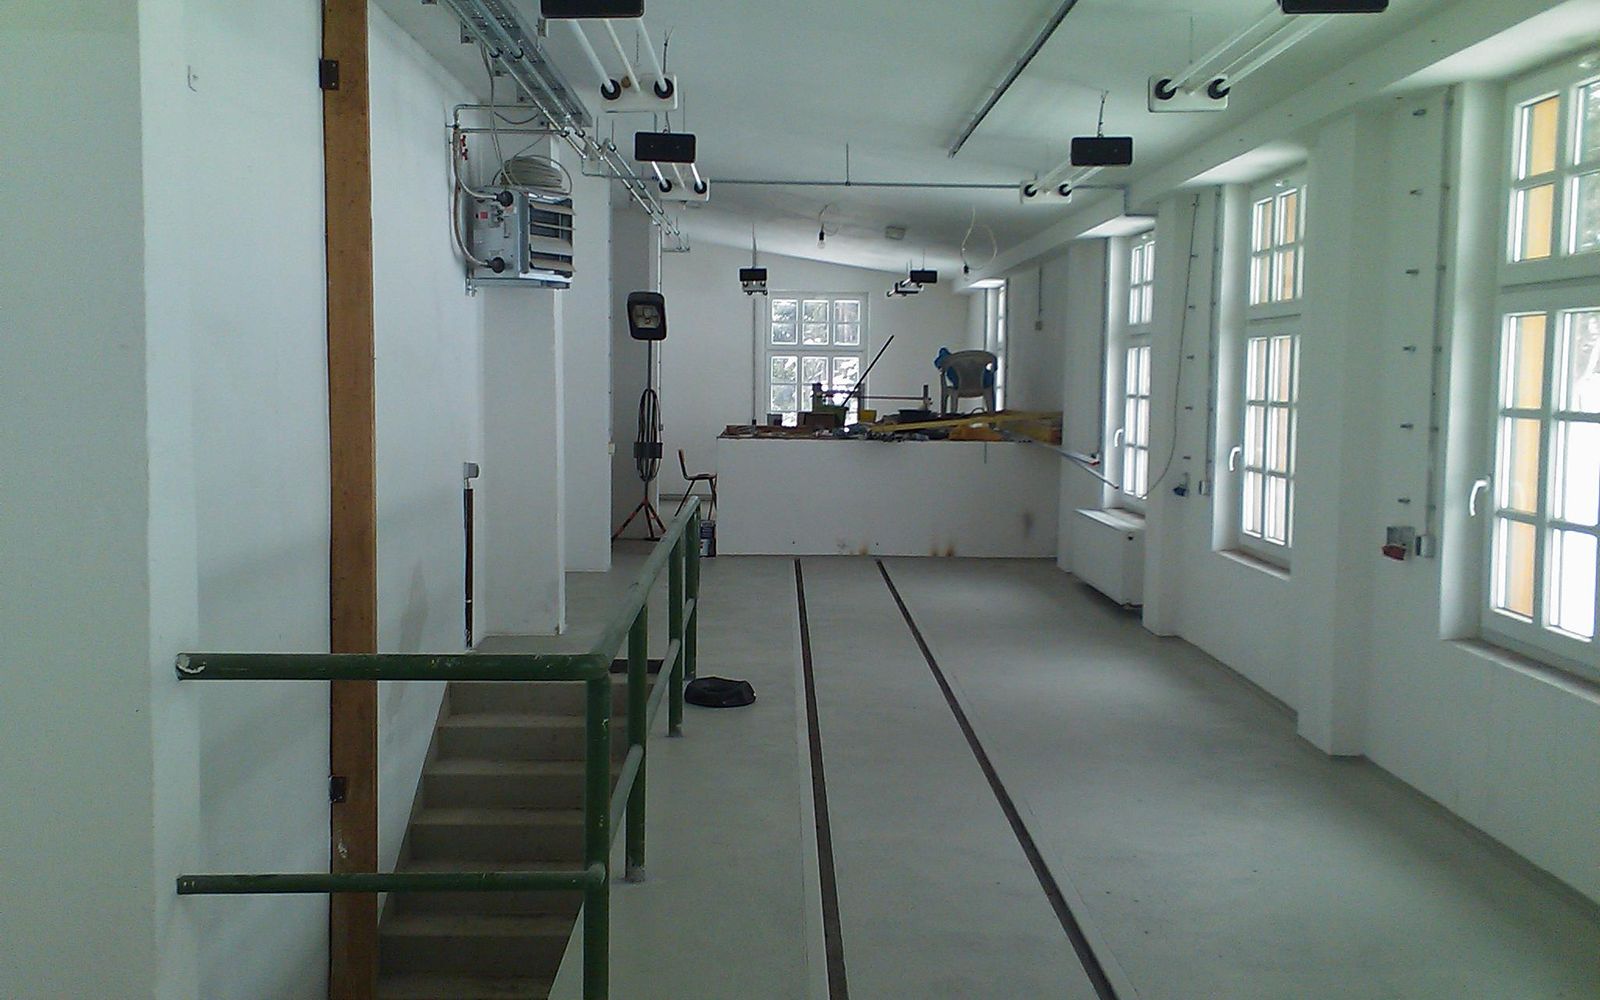 Blick in den Arbeitsbereich der Werkstatt, in dem künftig die Arbeiten an den Drehgestellen erfolgen sollen.